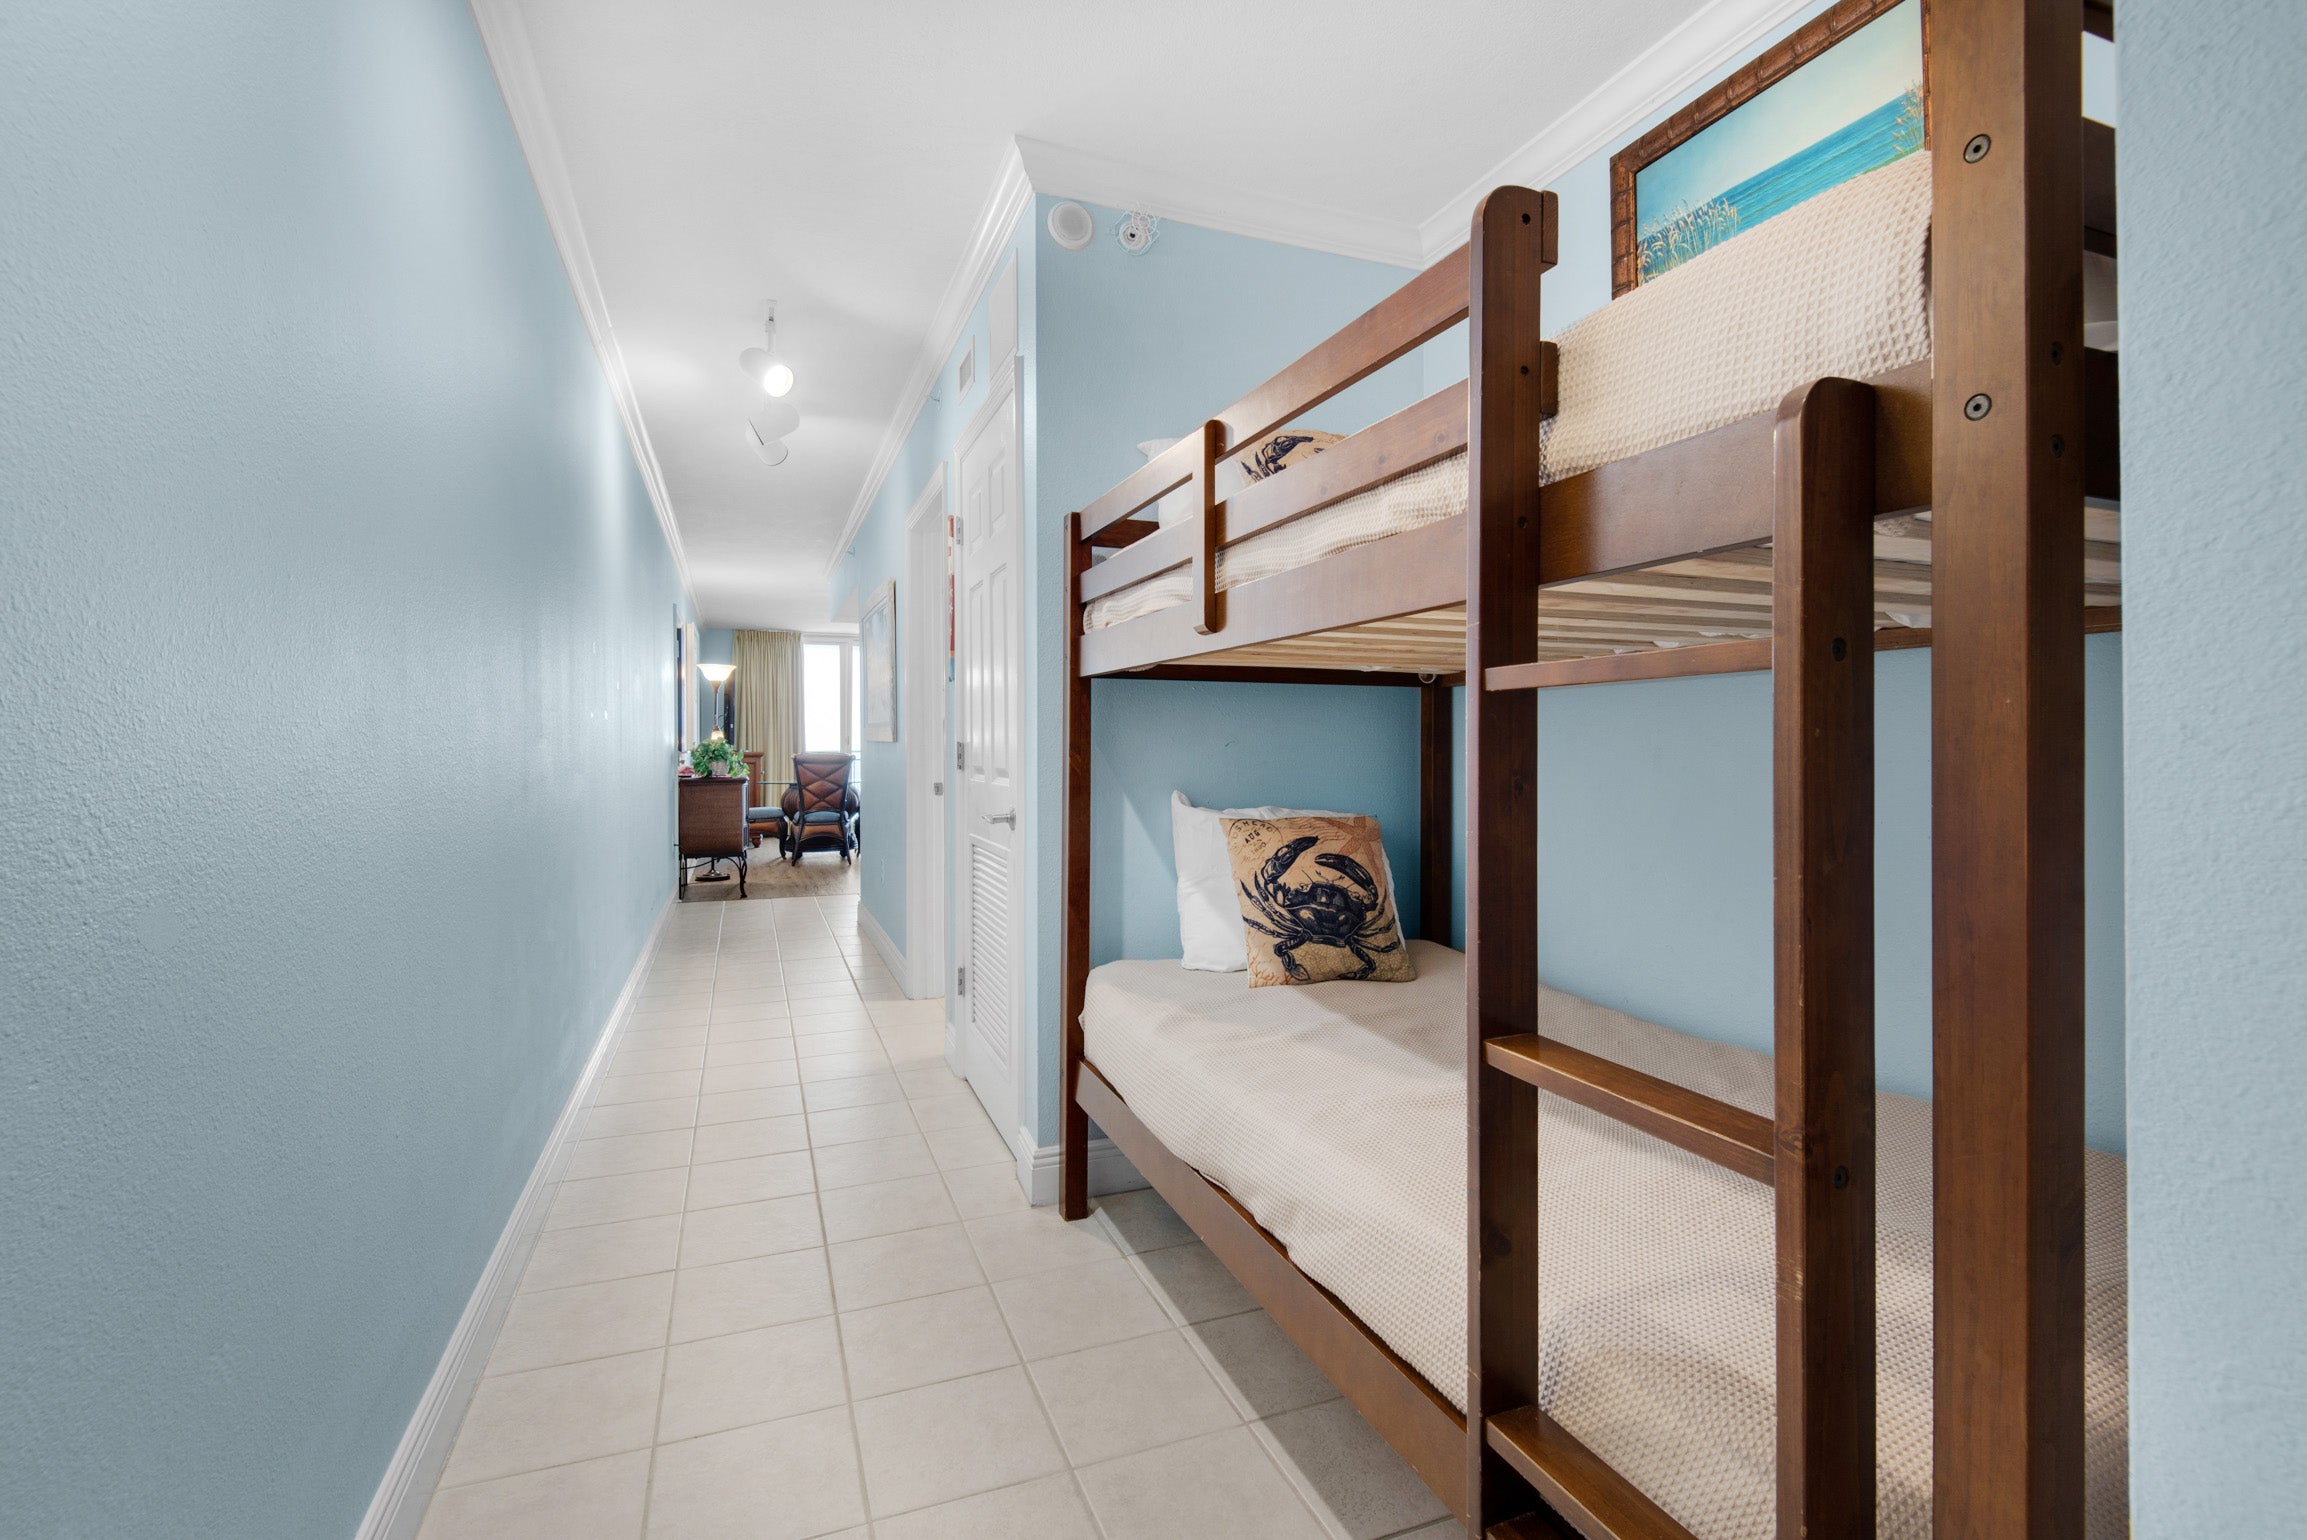 Bunk+beds+in+hallway